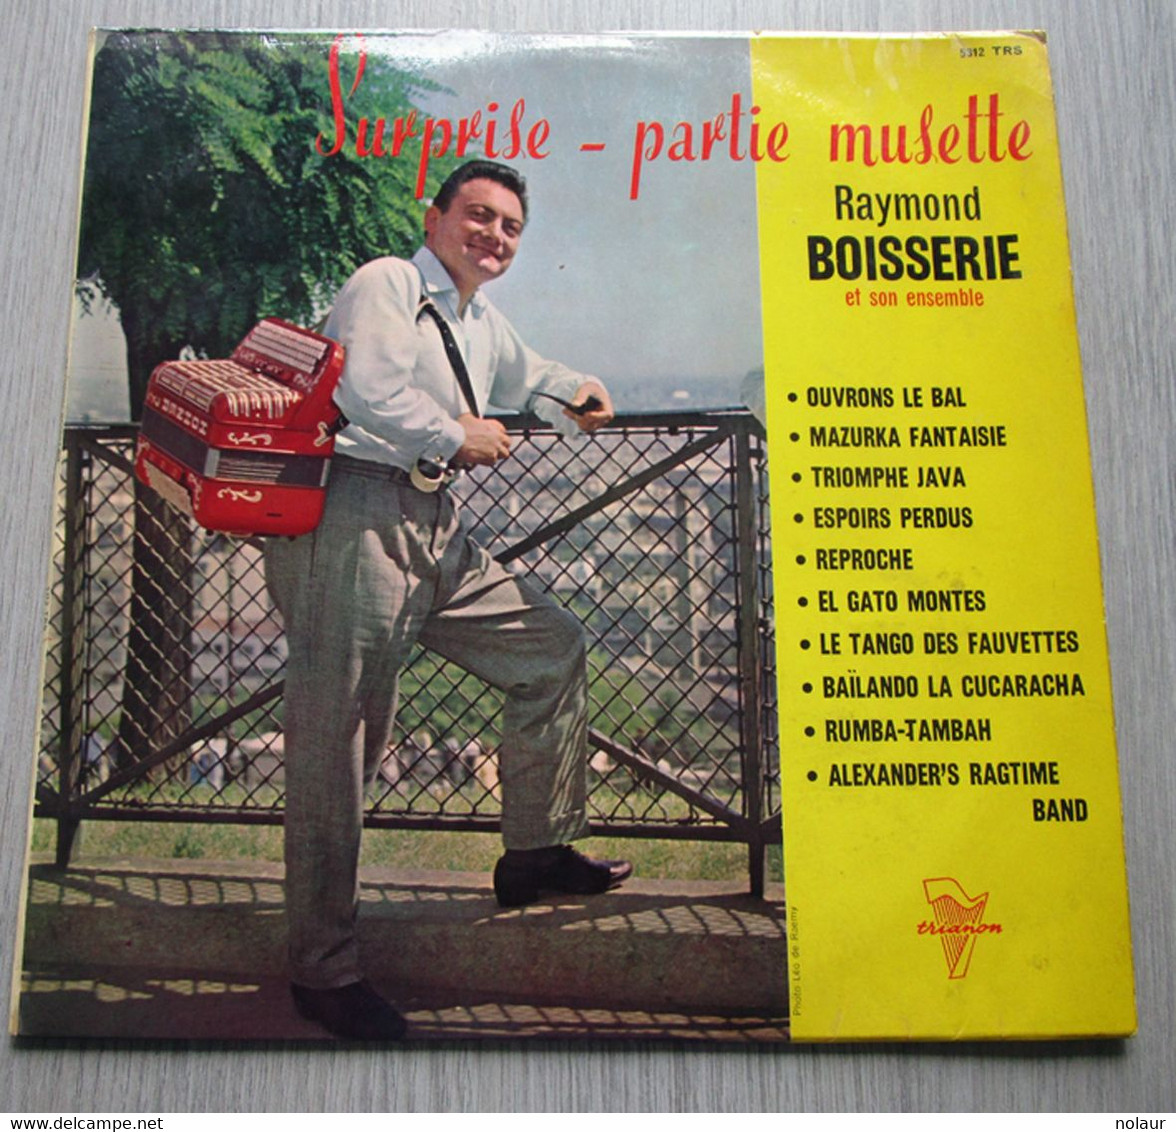 Raymond Boisserie Et Son Ensemble ‎– Surprise-Partie Musette - Formati Speciali